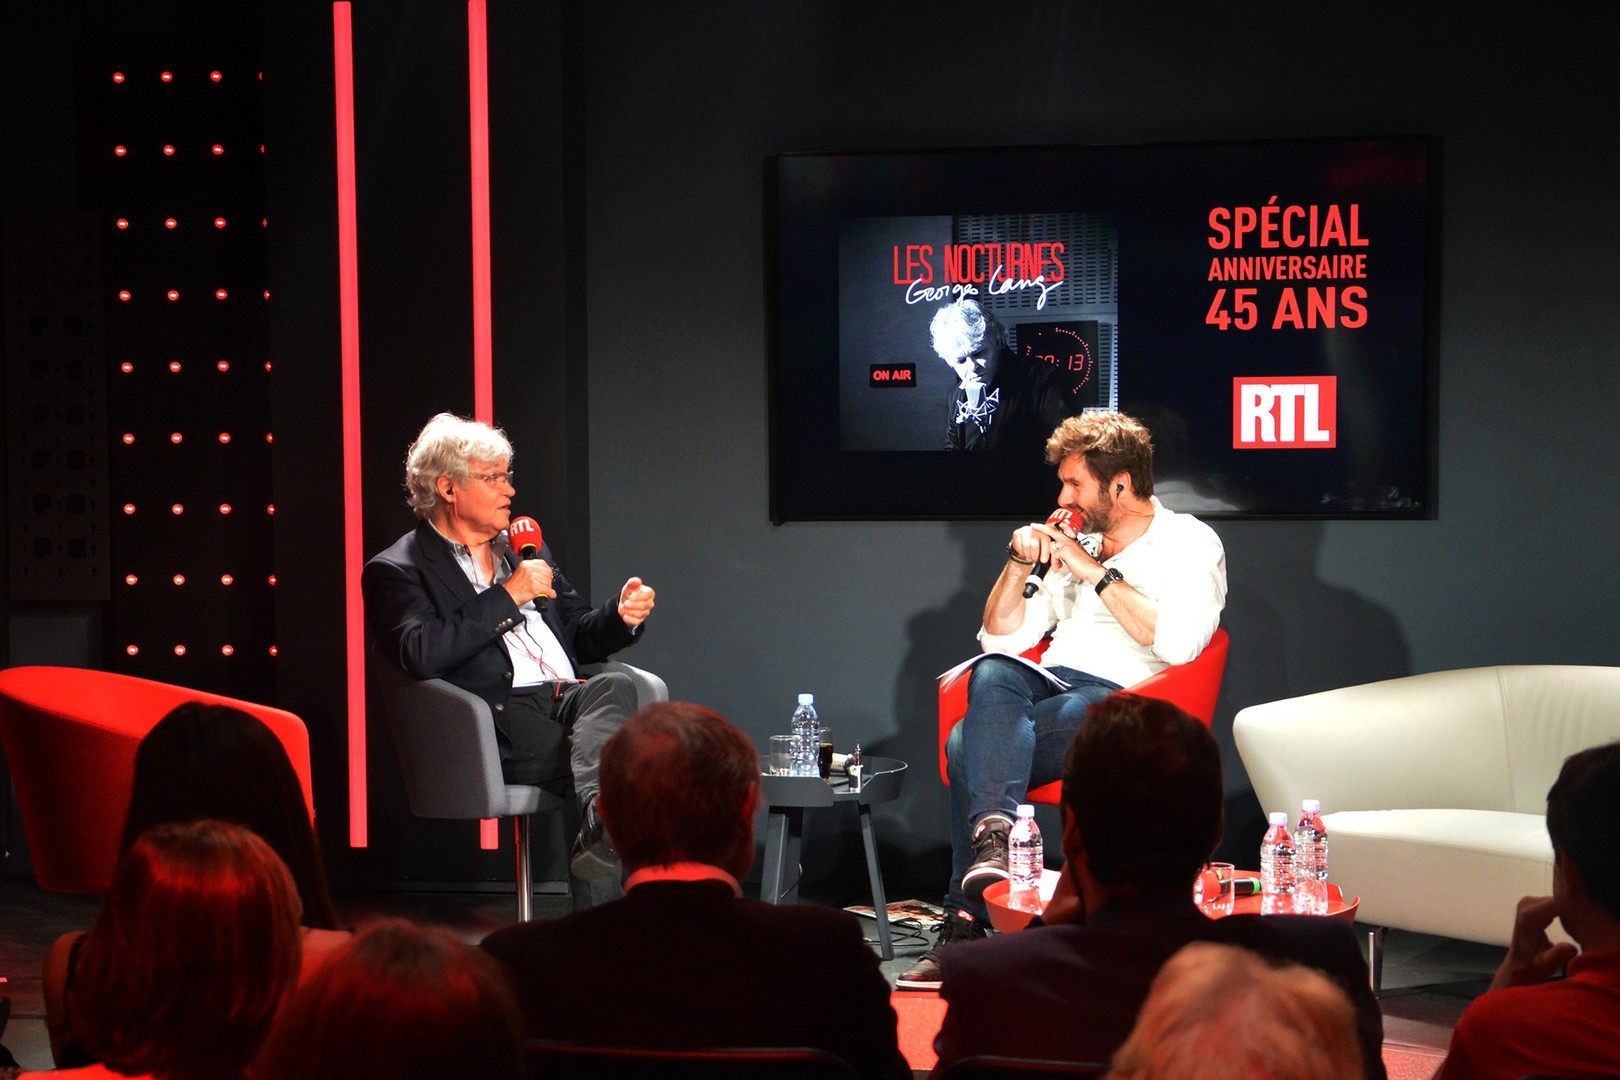 Georges Lang et Eric Jean jean lors des 45 ans des Nocturnes la nuit dernière sur RTL © Kervin Portelli